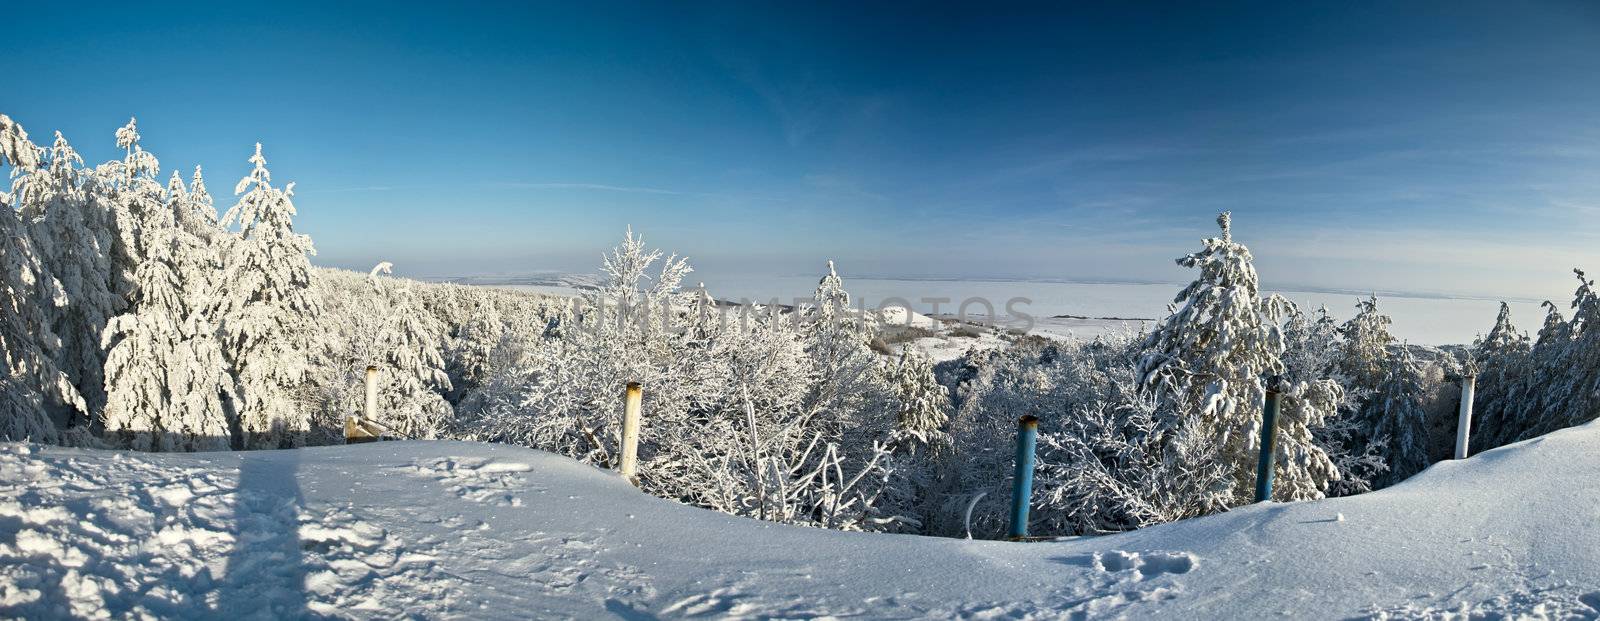 Winter landscape by Oledjio